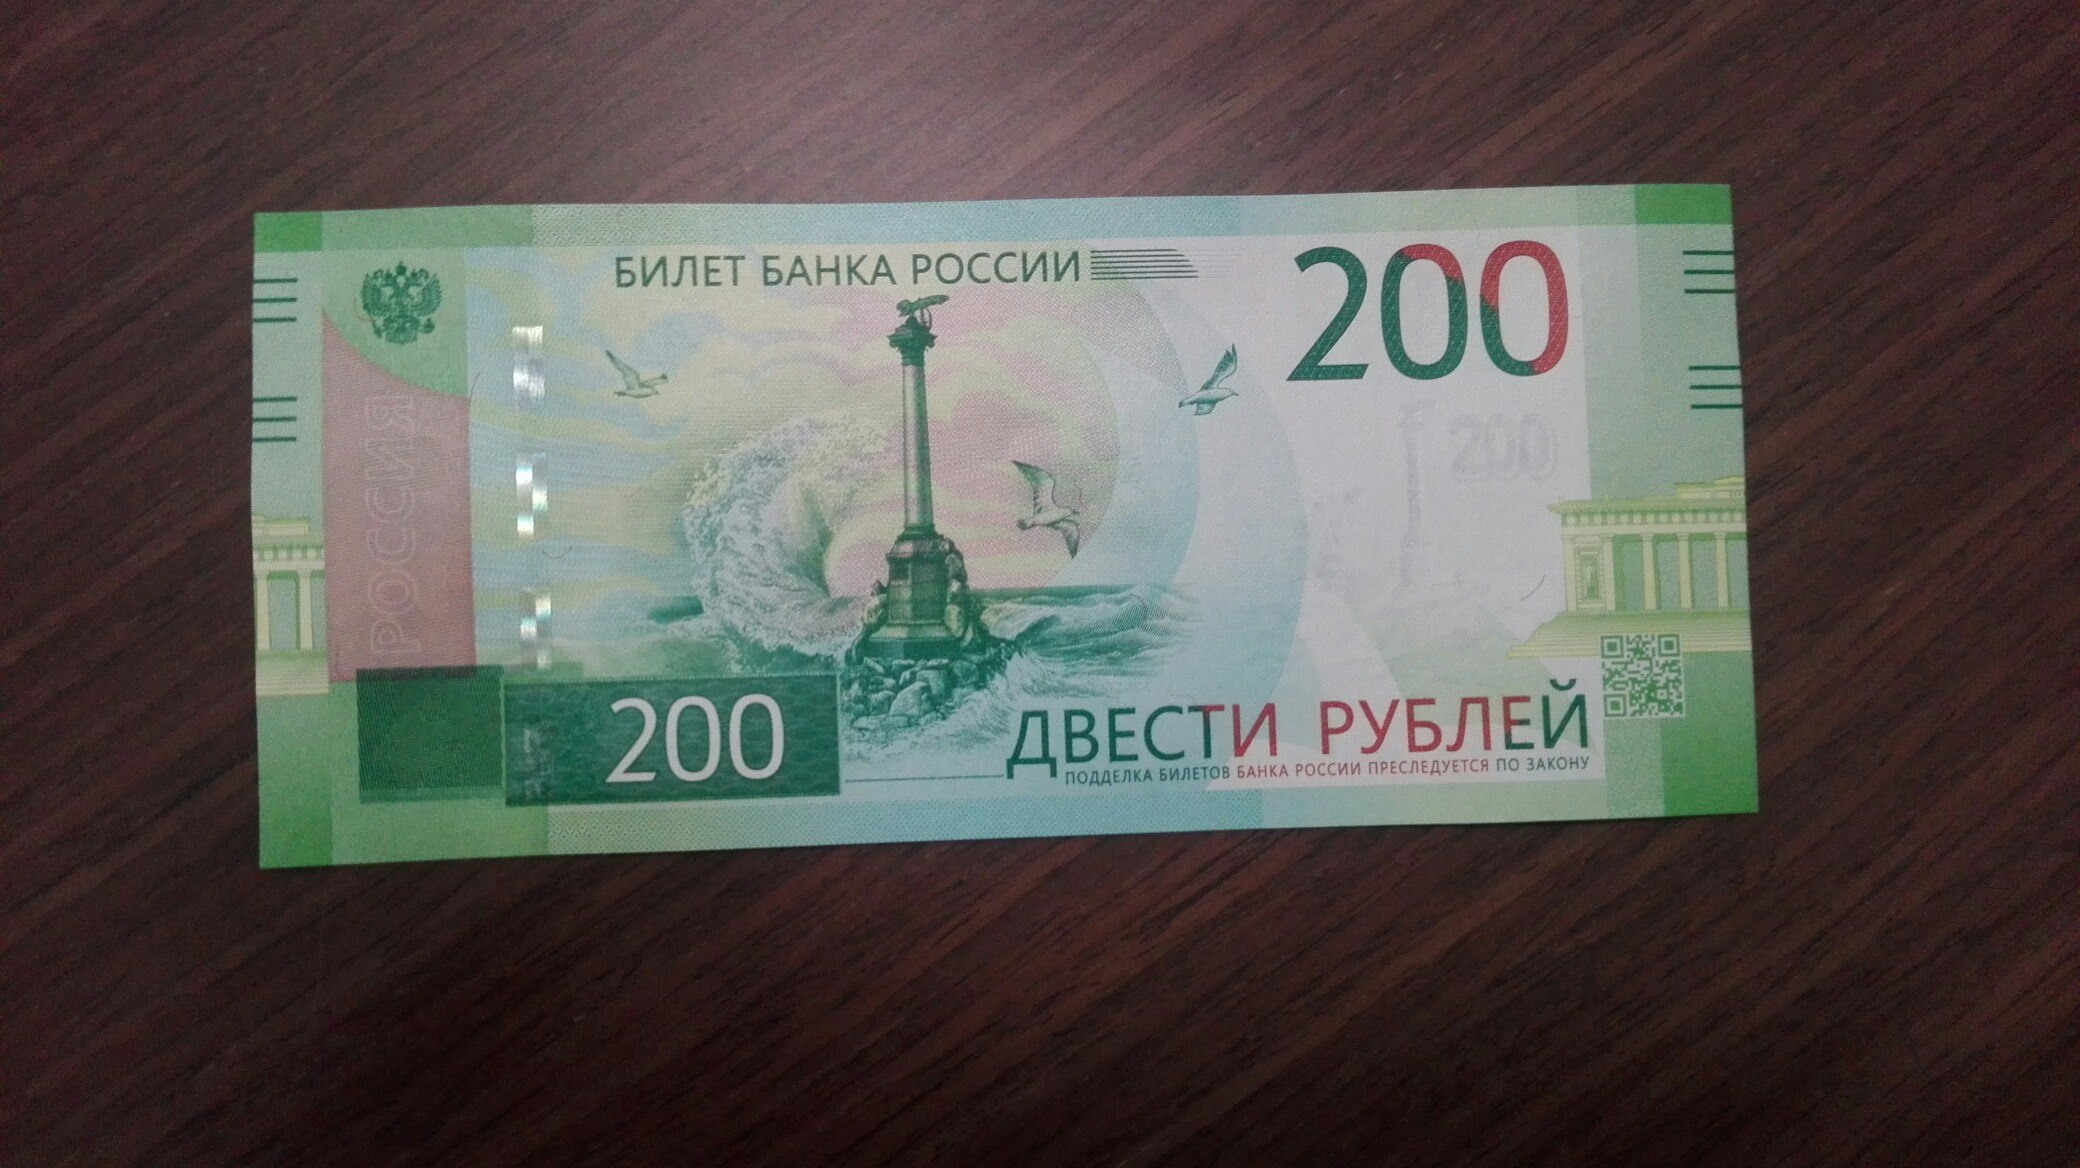 170 200 рублей. 200 Рублей. 200 Рублей банкнота. Новые двести рублей. Российские купюры 200 рублей.